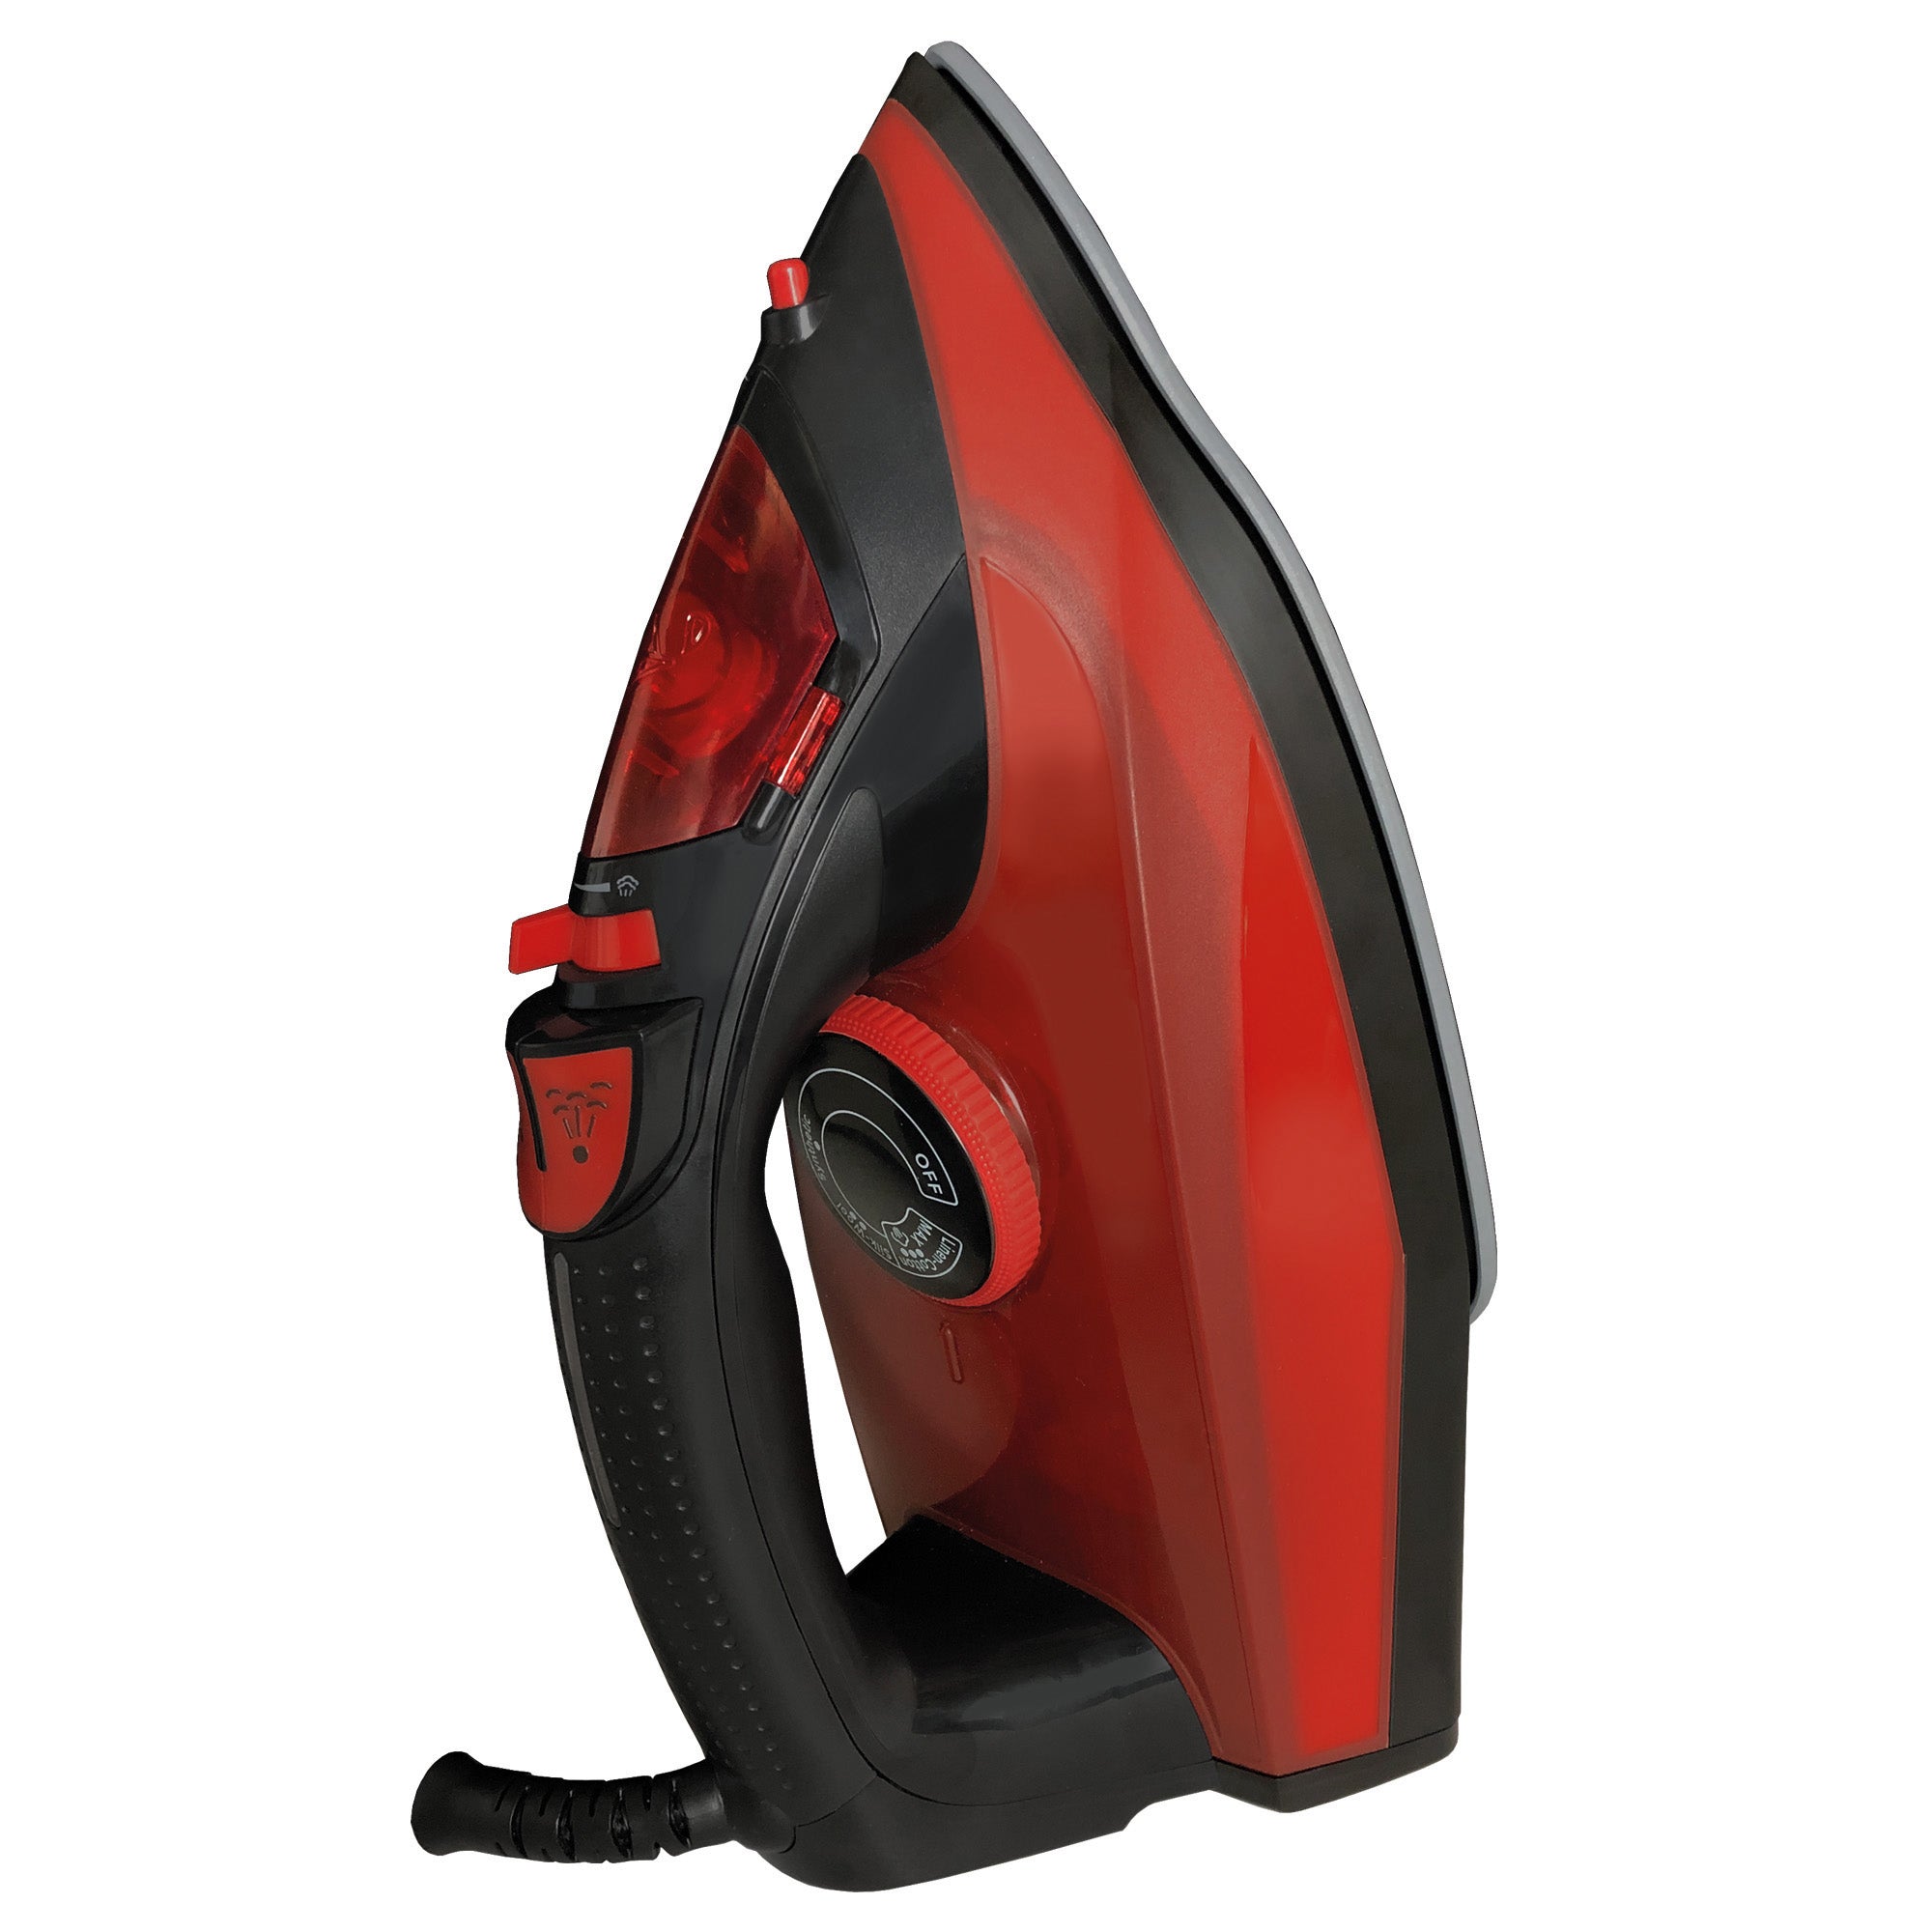 PowerSteam Steam Iron, 2600W, Red/Black